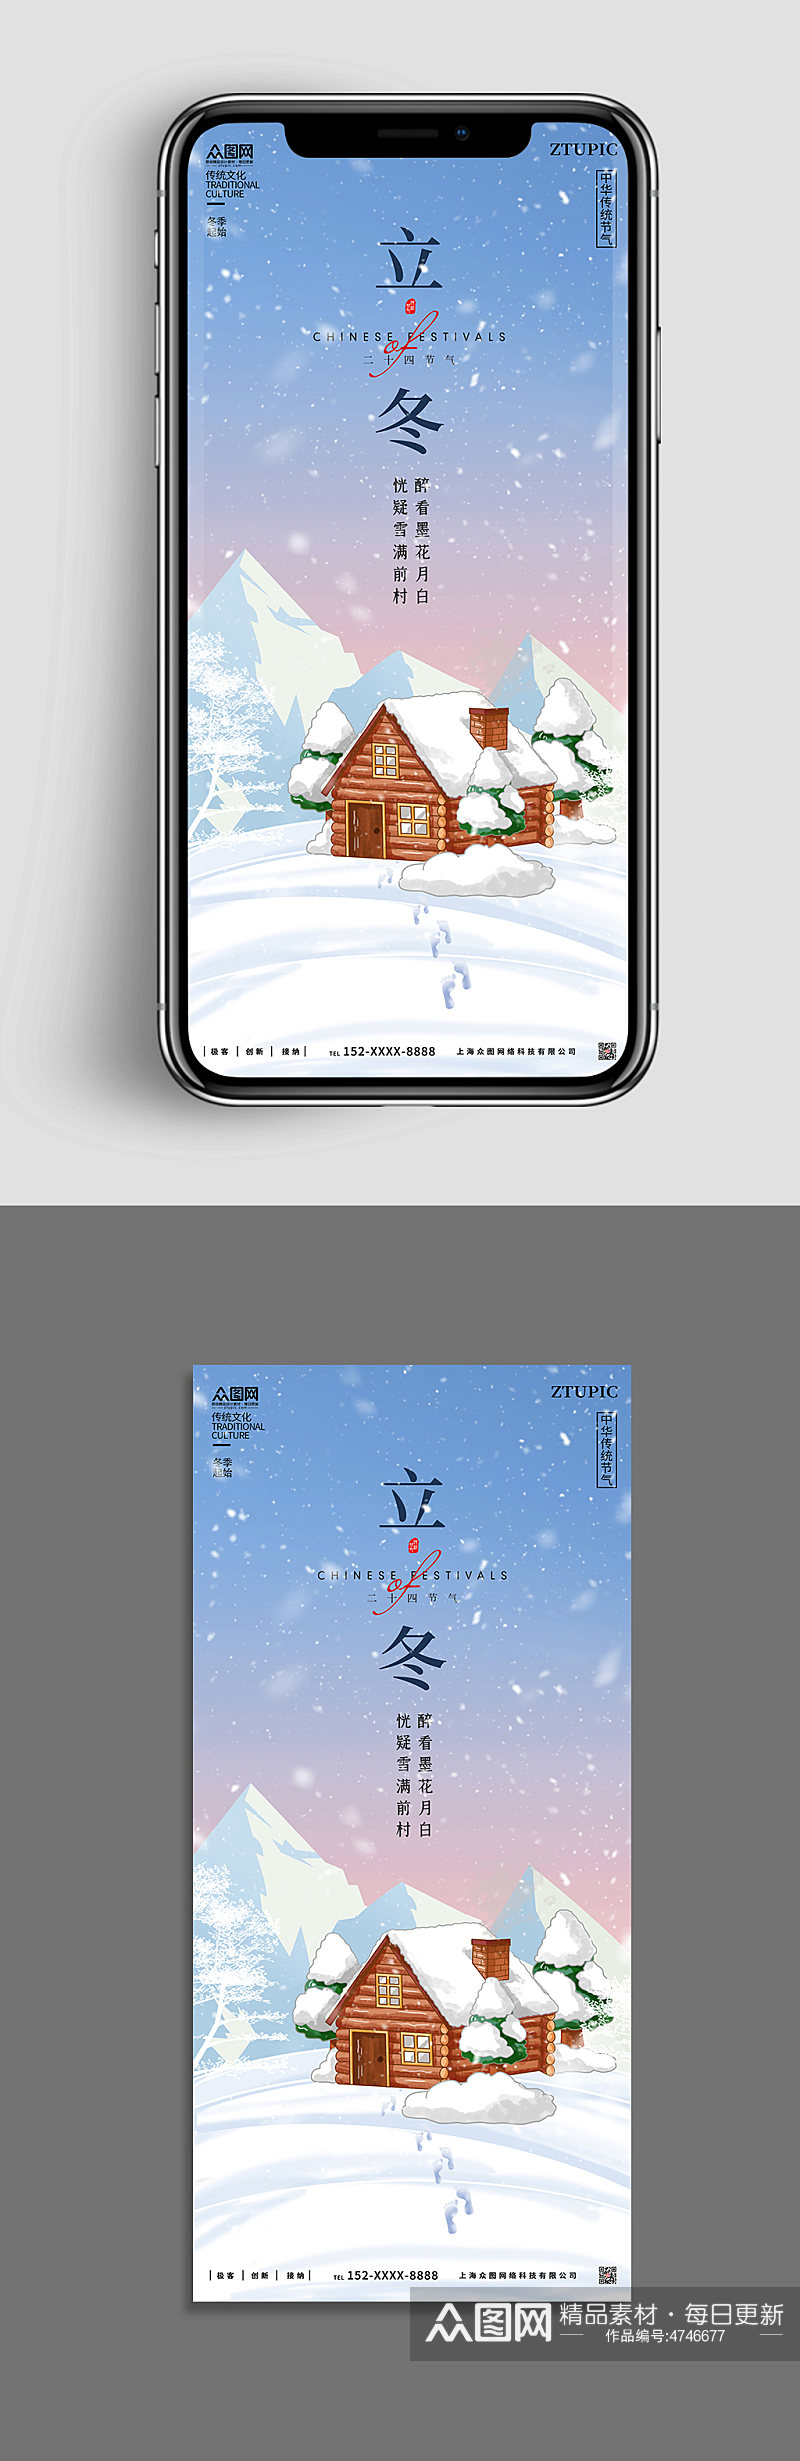 温暖立冬节气雪屋冬季冬天手机ui长图海报素材